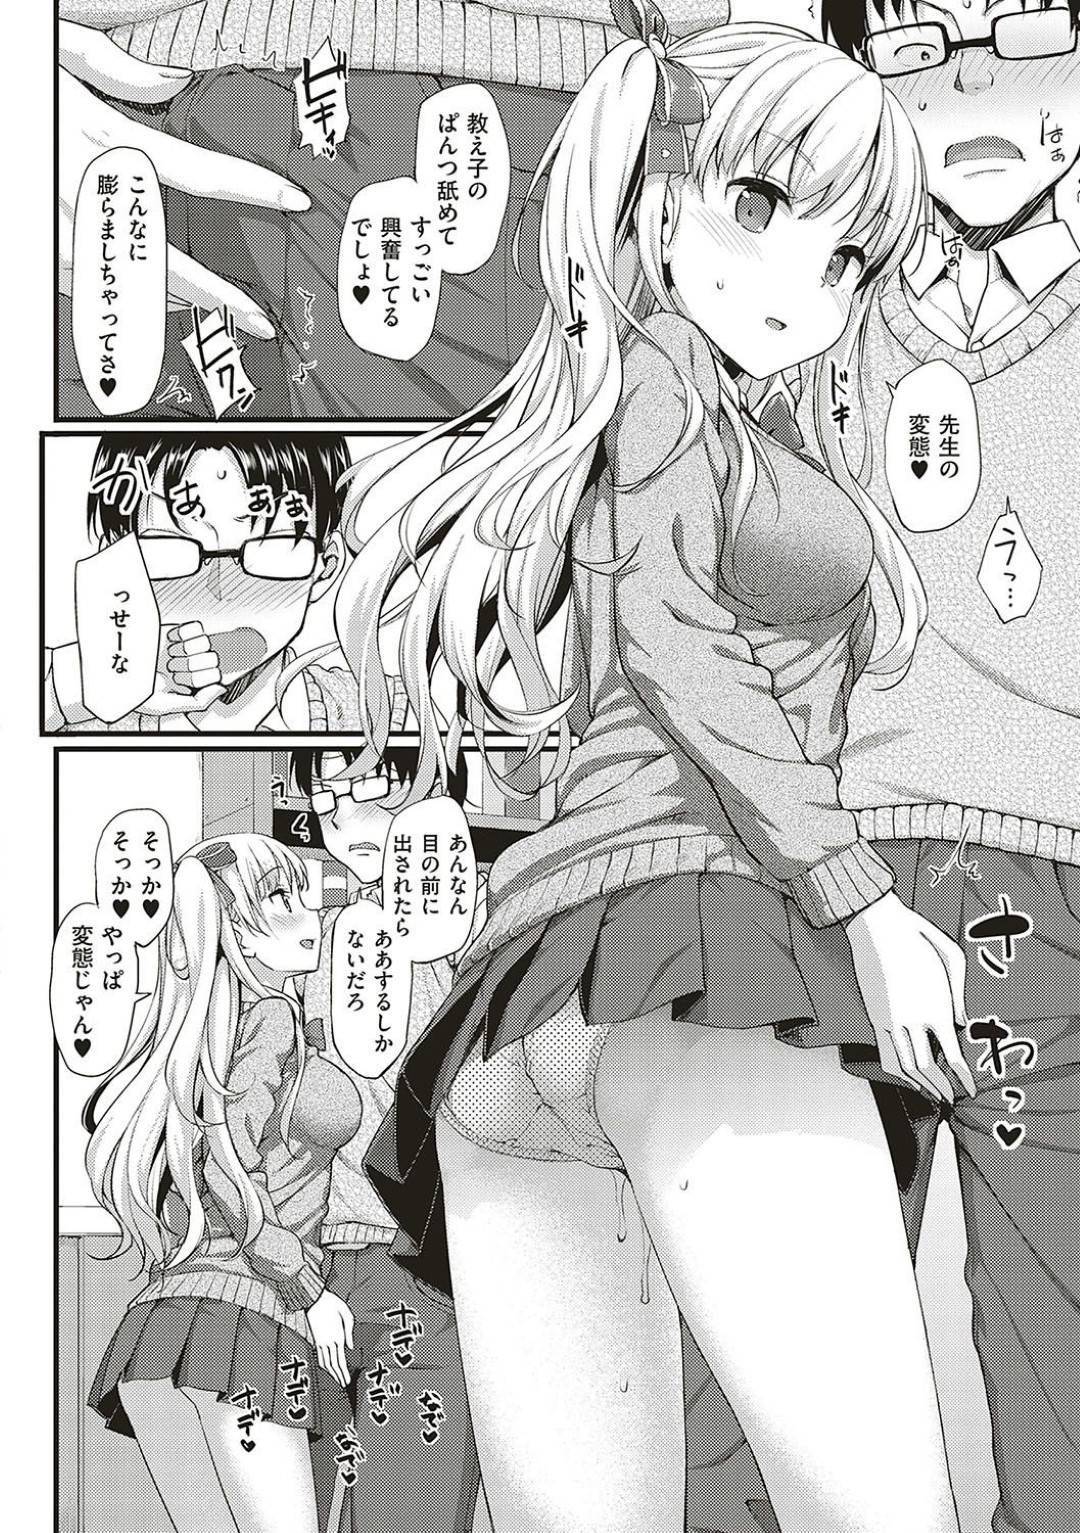 【エロ漫画】鈍感なJKはスカートを捲ると先生の顔にパンツを押し付けると、興奮した先生と中出しセックス【たかやKi】